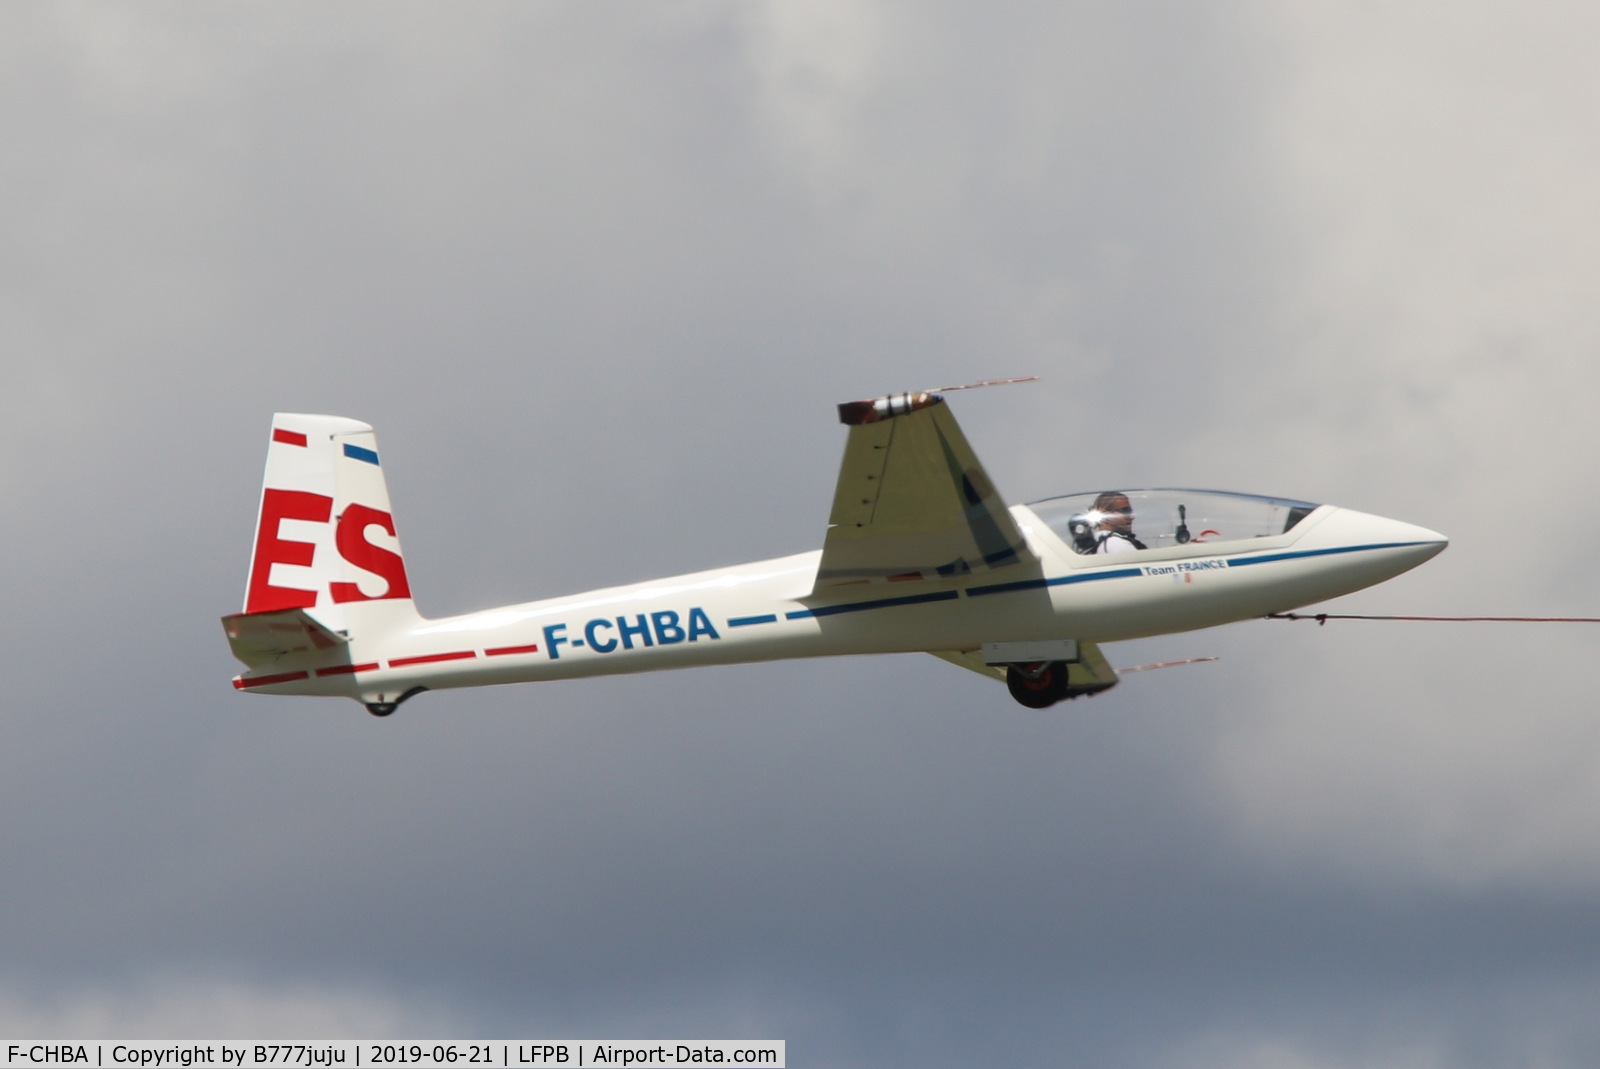 F-CHBA, Marganski Swift S-1 C/N 108, on display at SIAE 2019